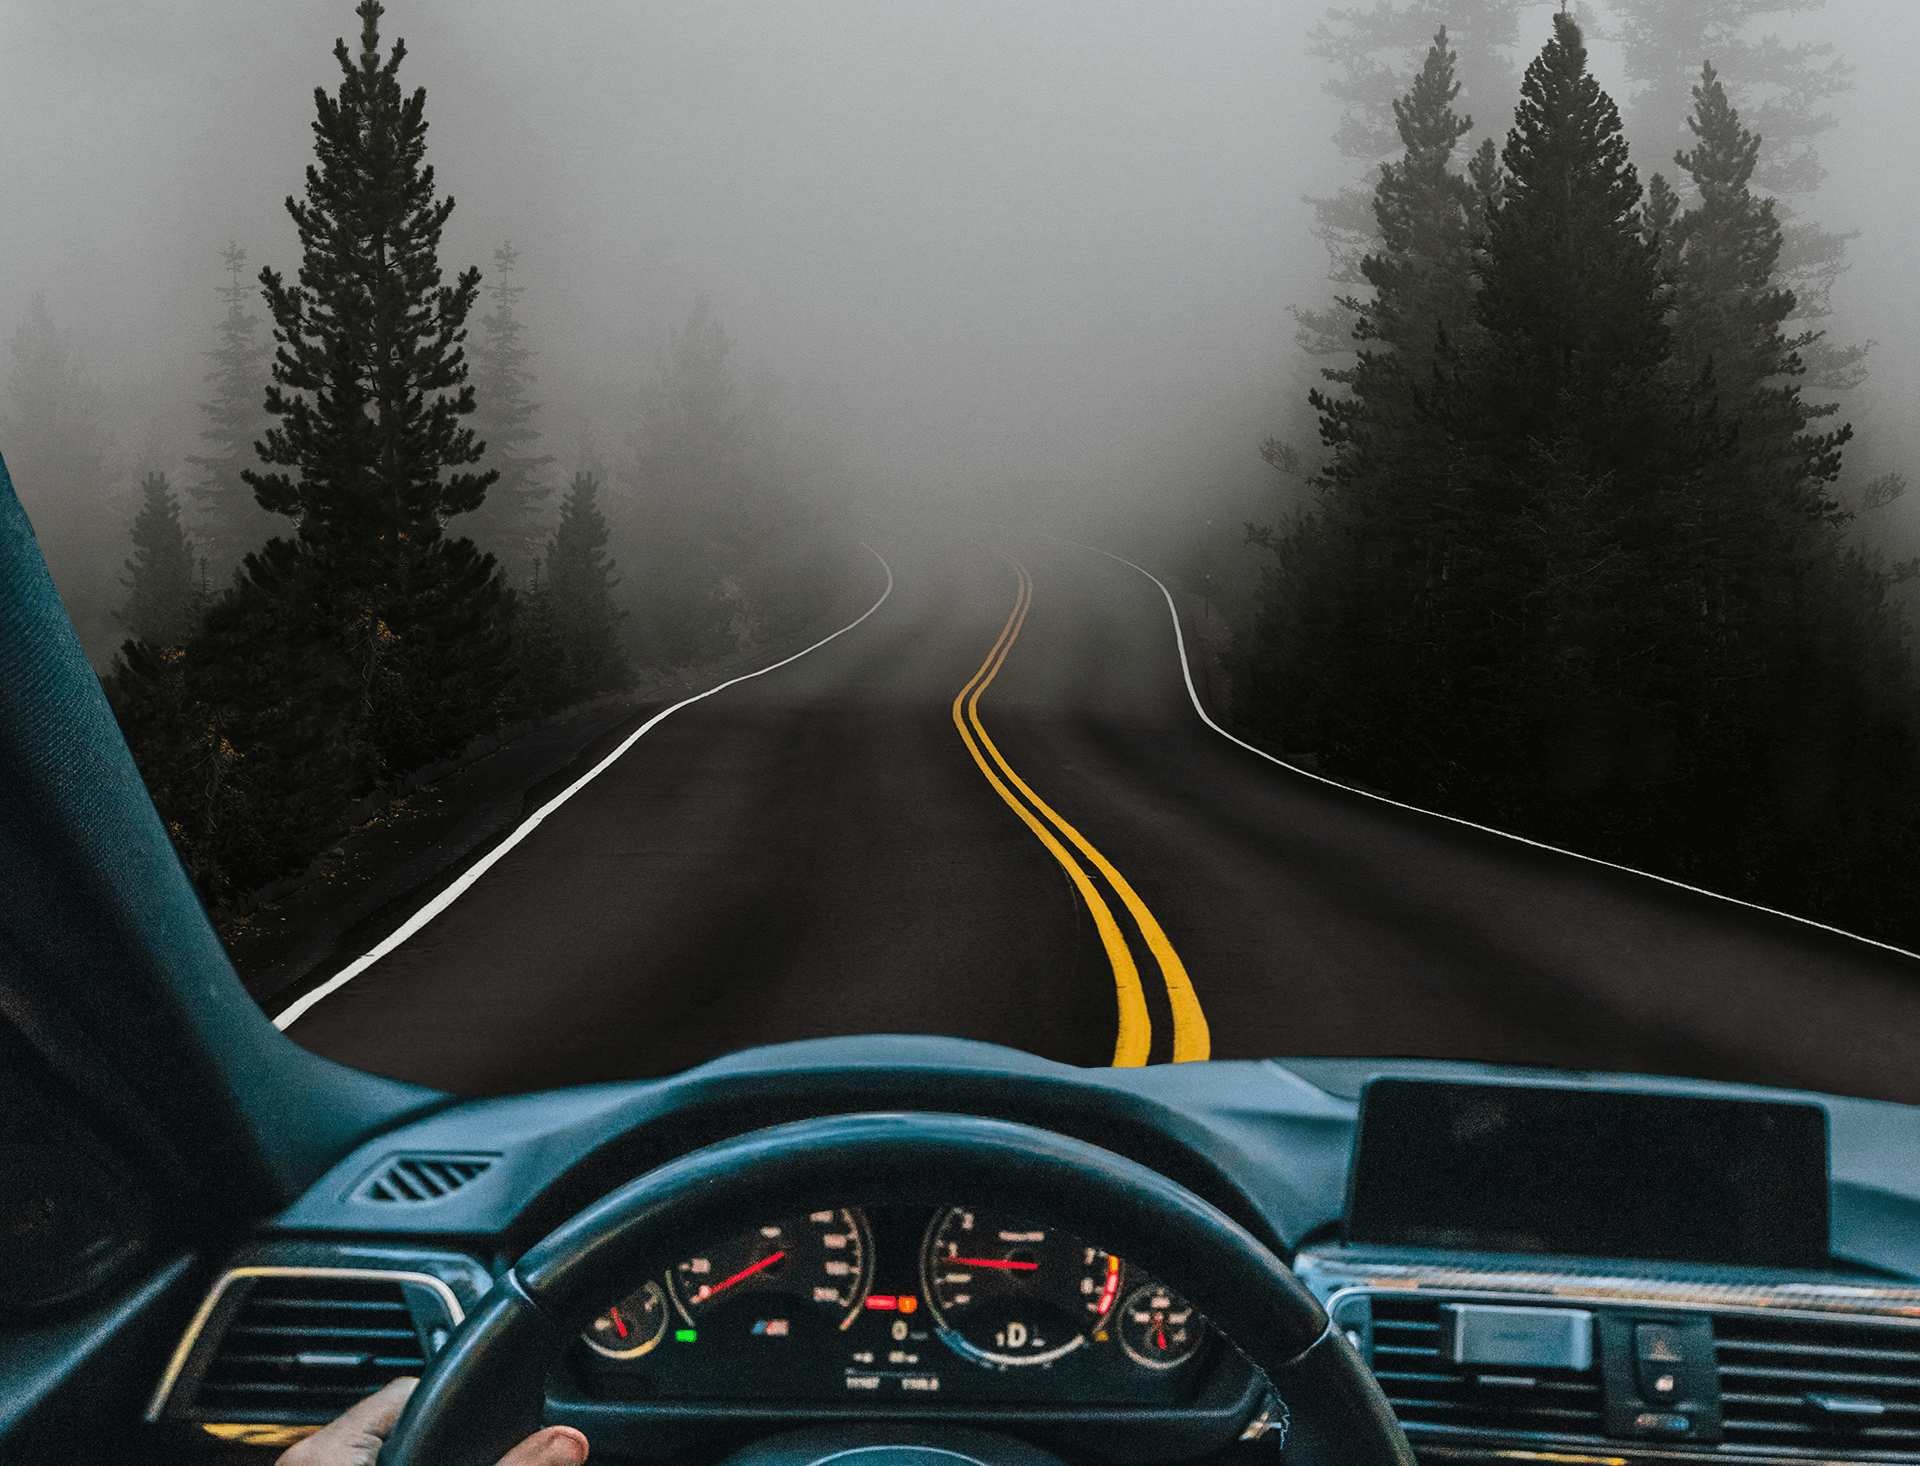 Mglista leśna droga i widok na deskę rozdzielczą samochodu